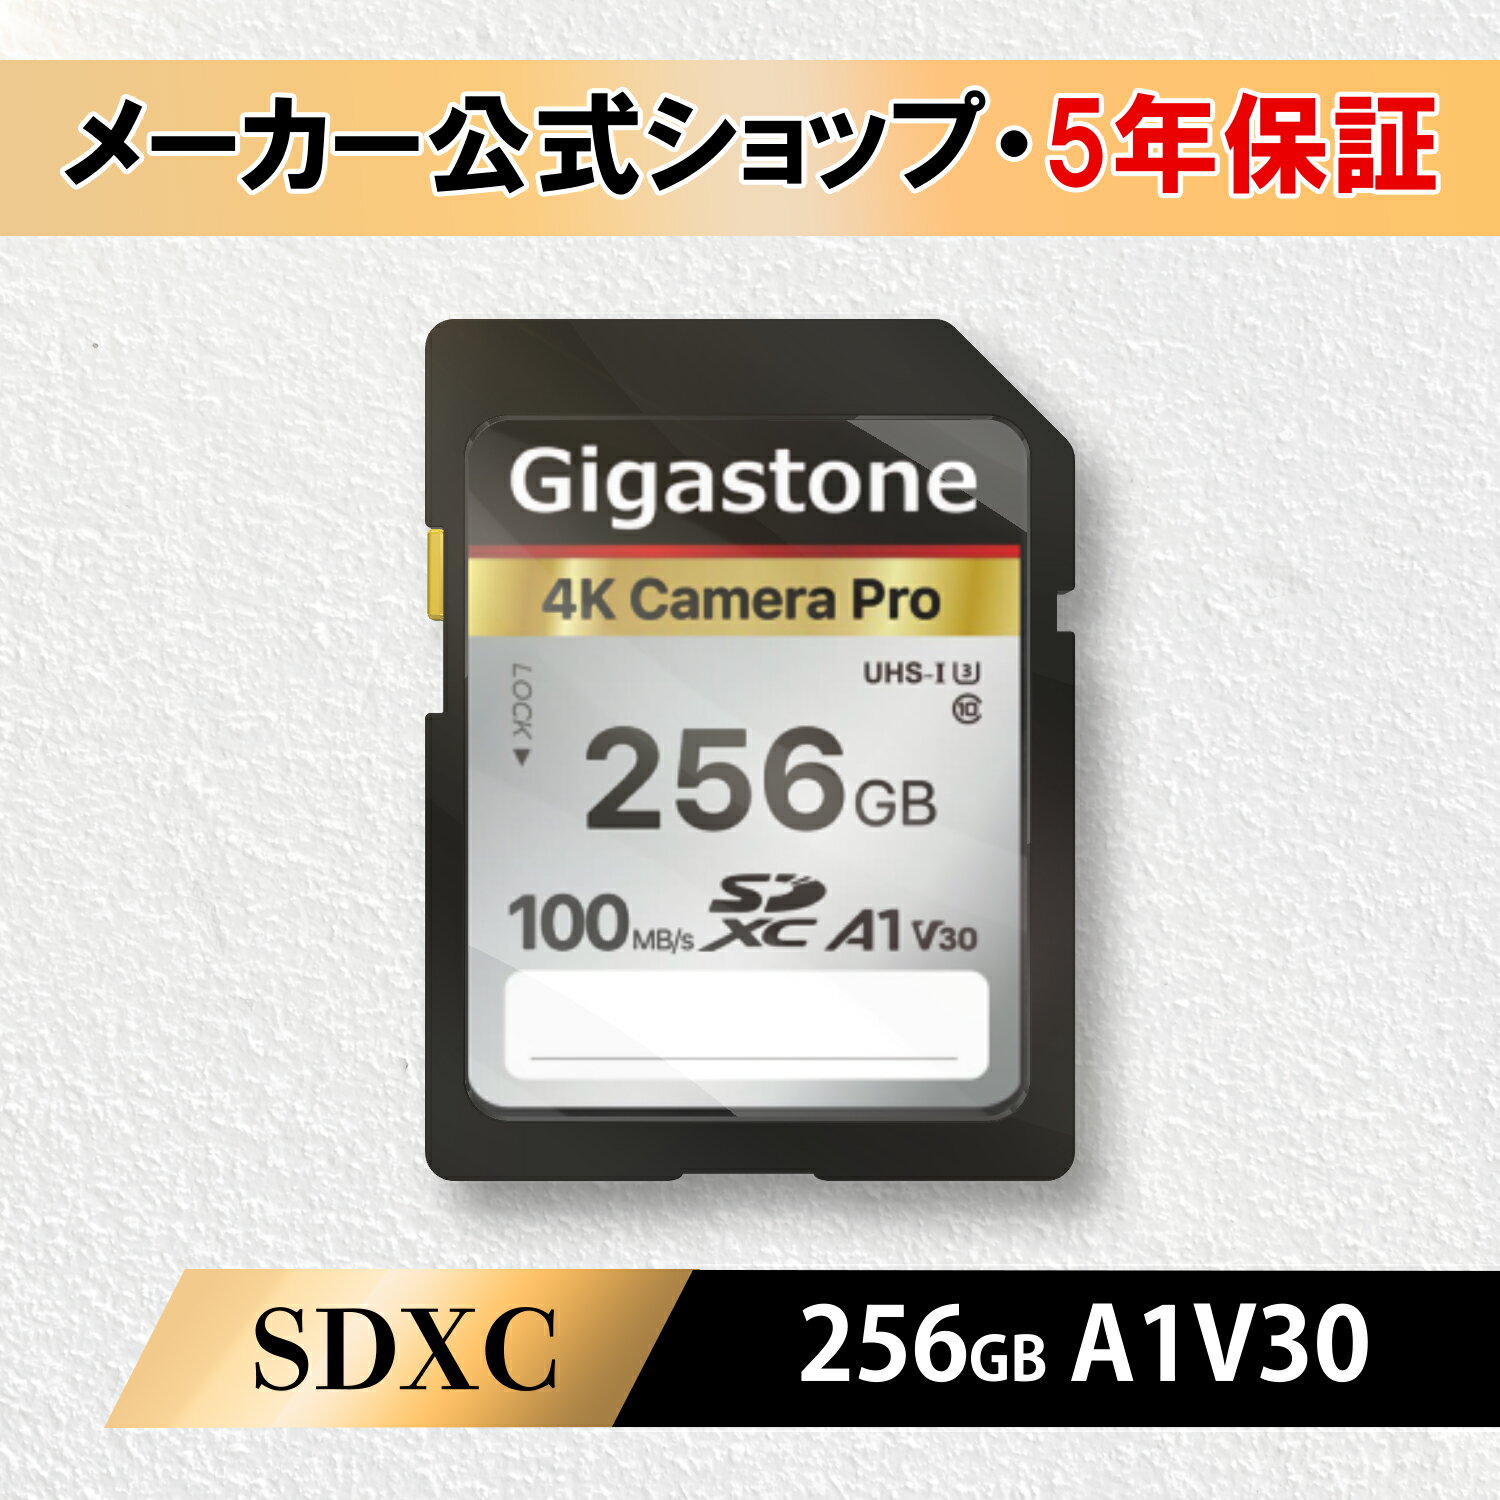 【保証5年】Gigastone SDカード 256GB SDXC